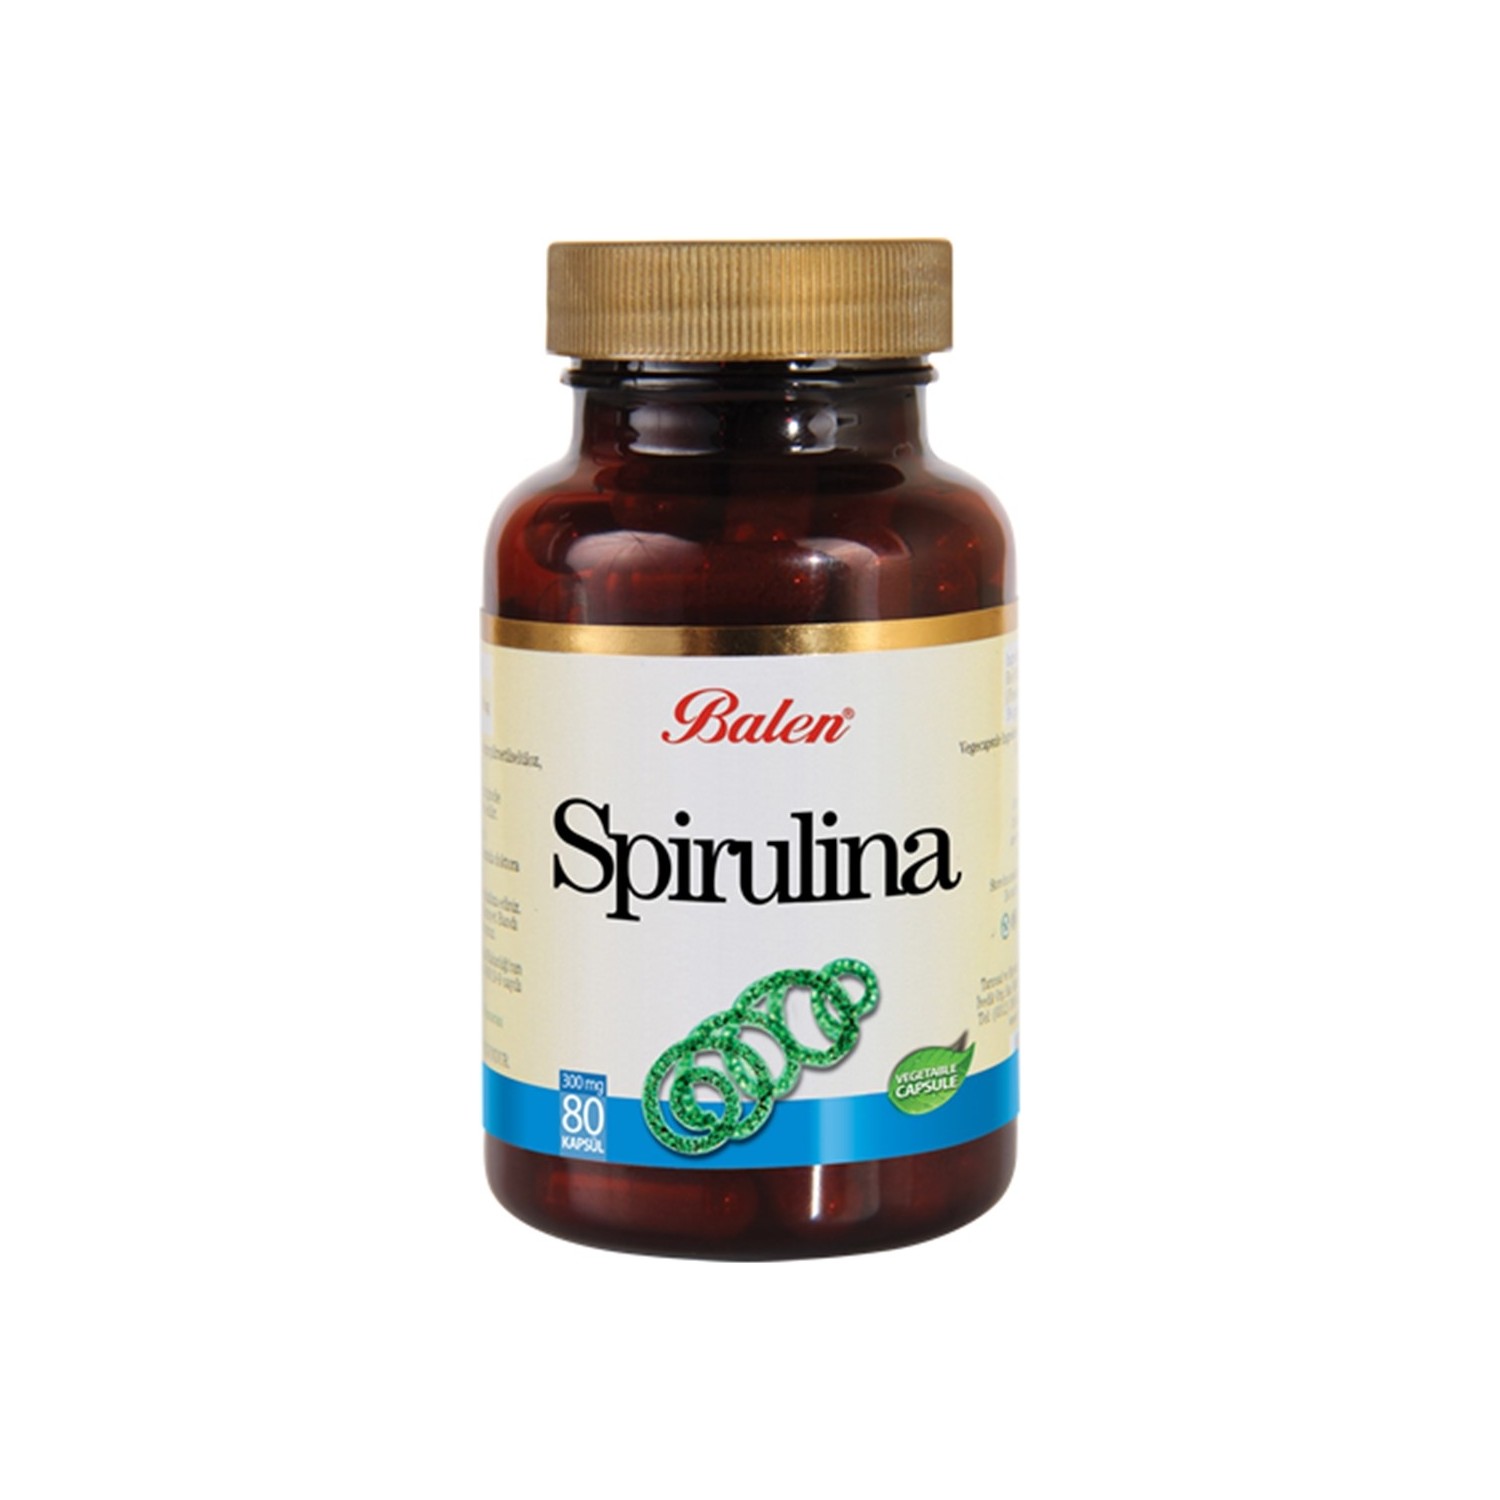 цена Пищевая добавка Balen Spirulina 375 мг, 80 капсул